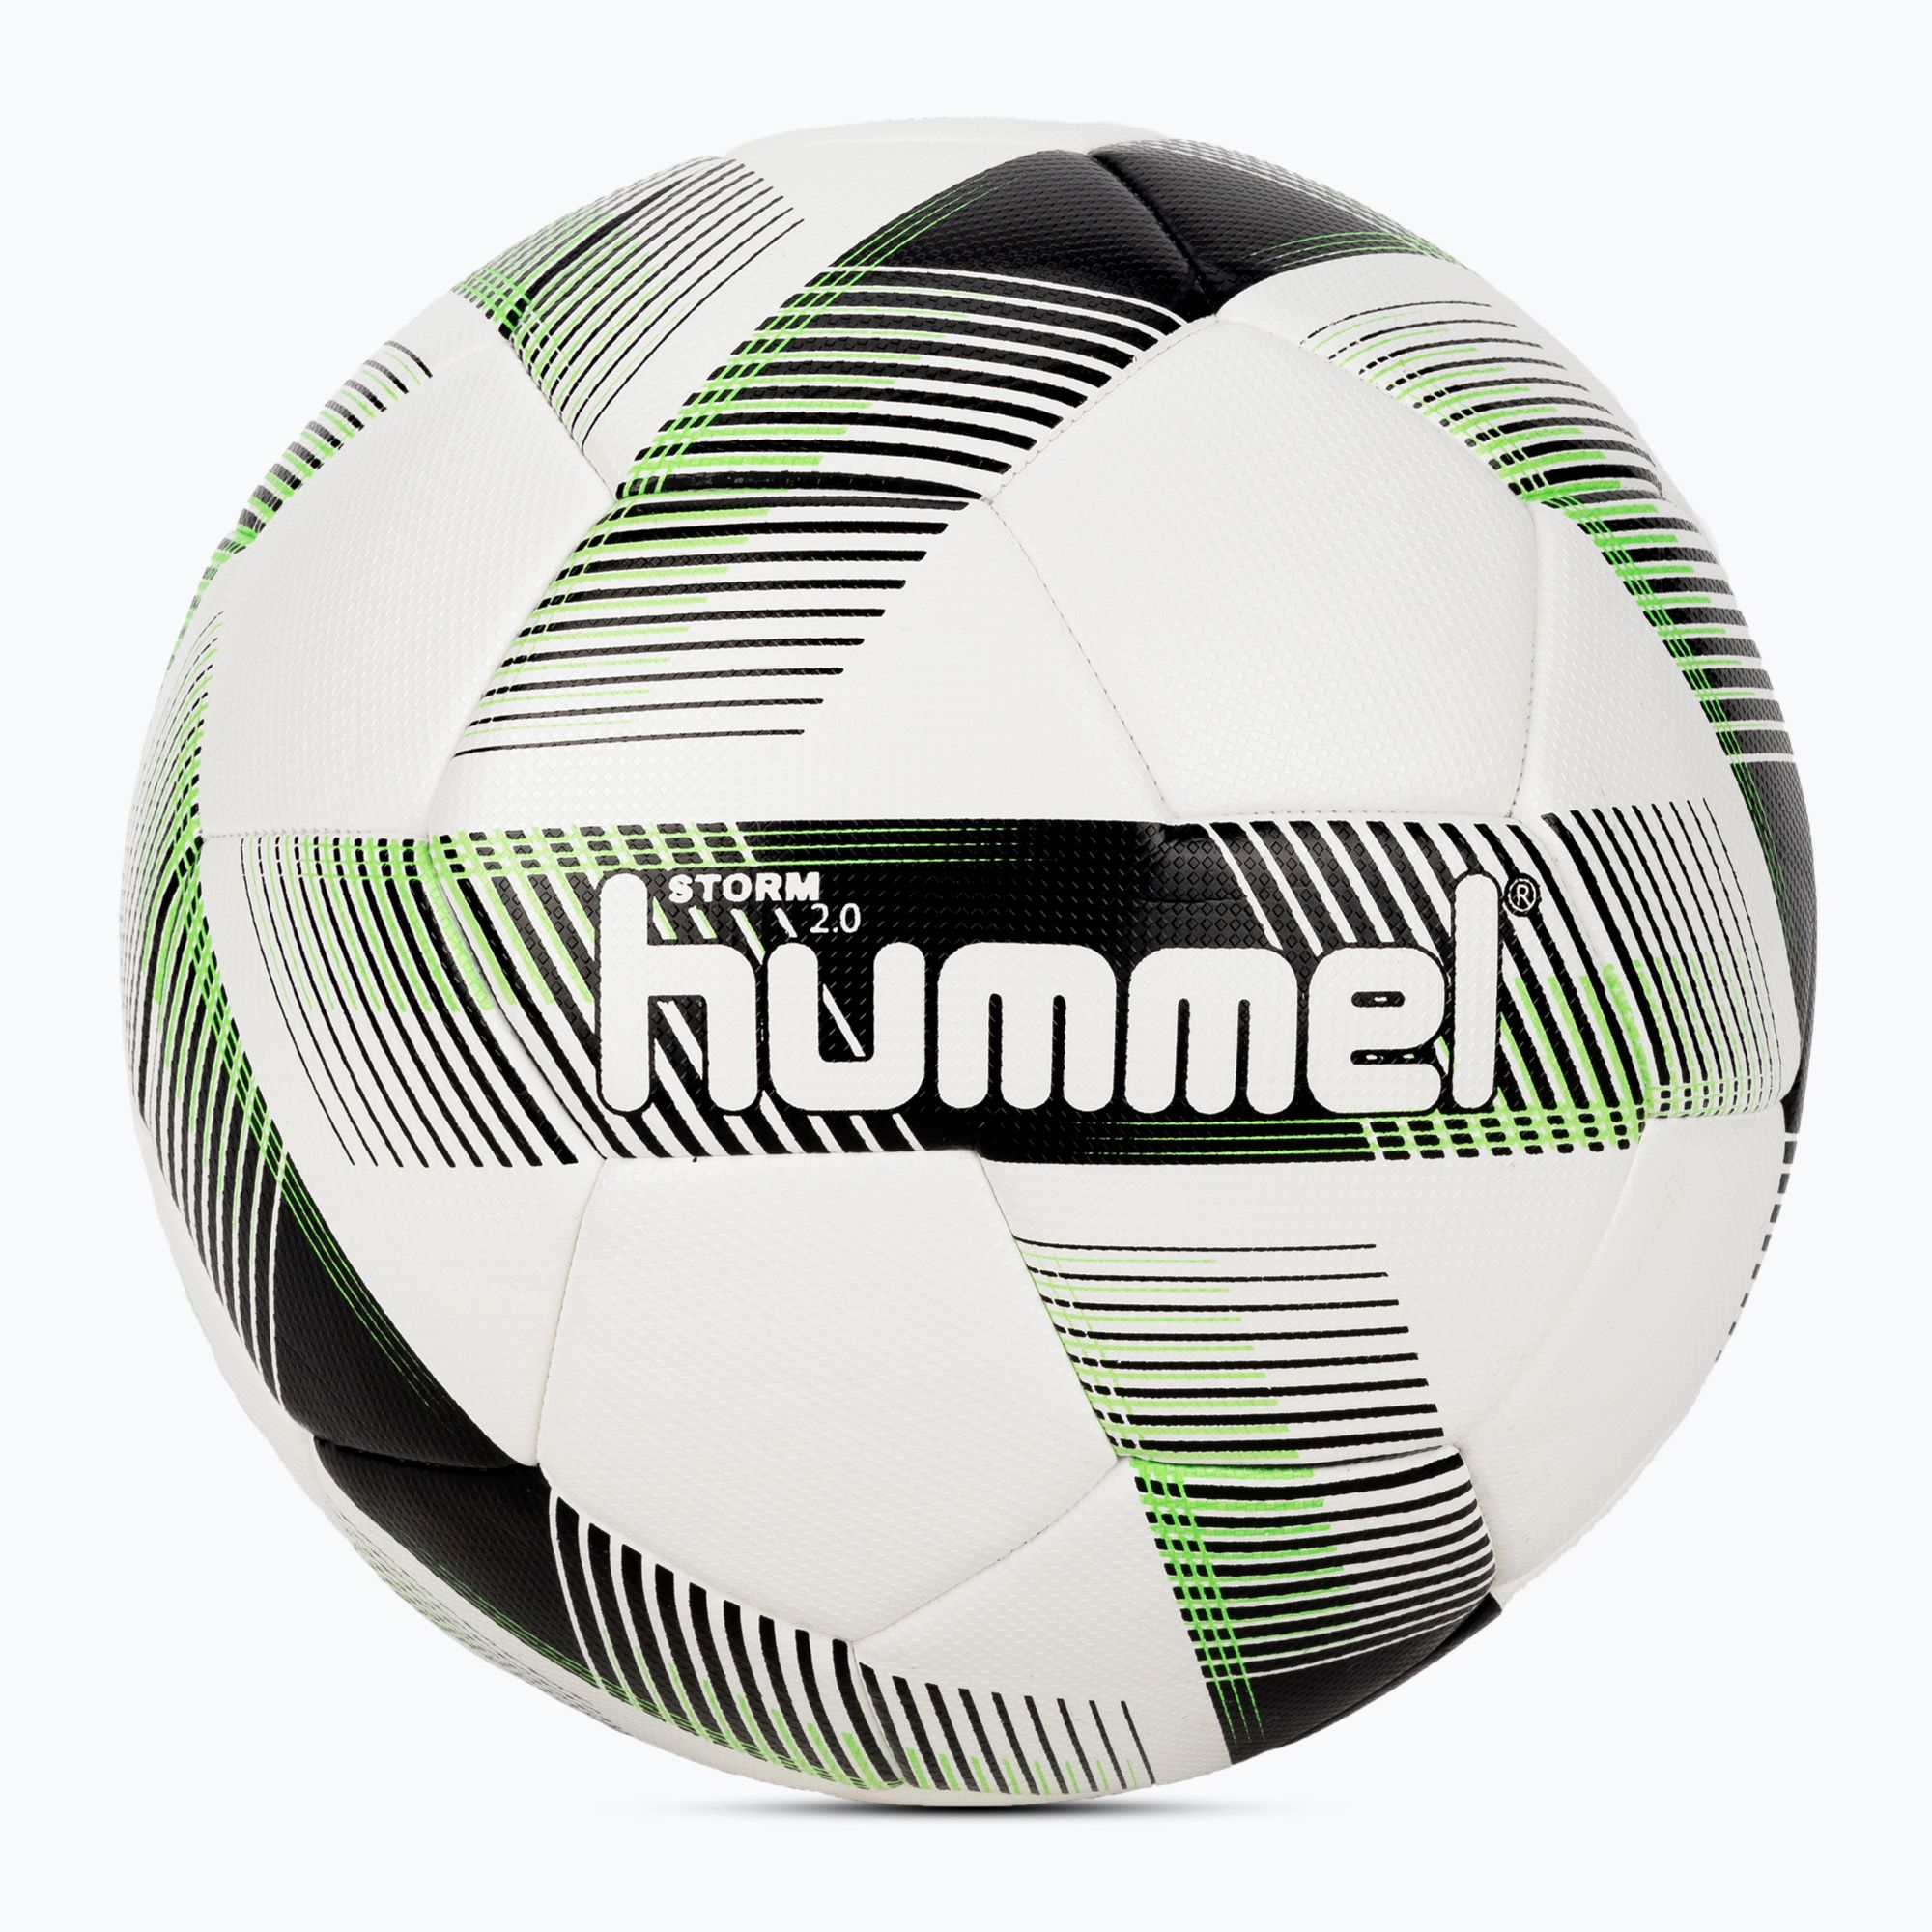 Piłka do piłki nożnej Hummel Storm 2.0 FB white/black/green rozmiar 5